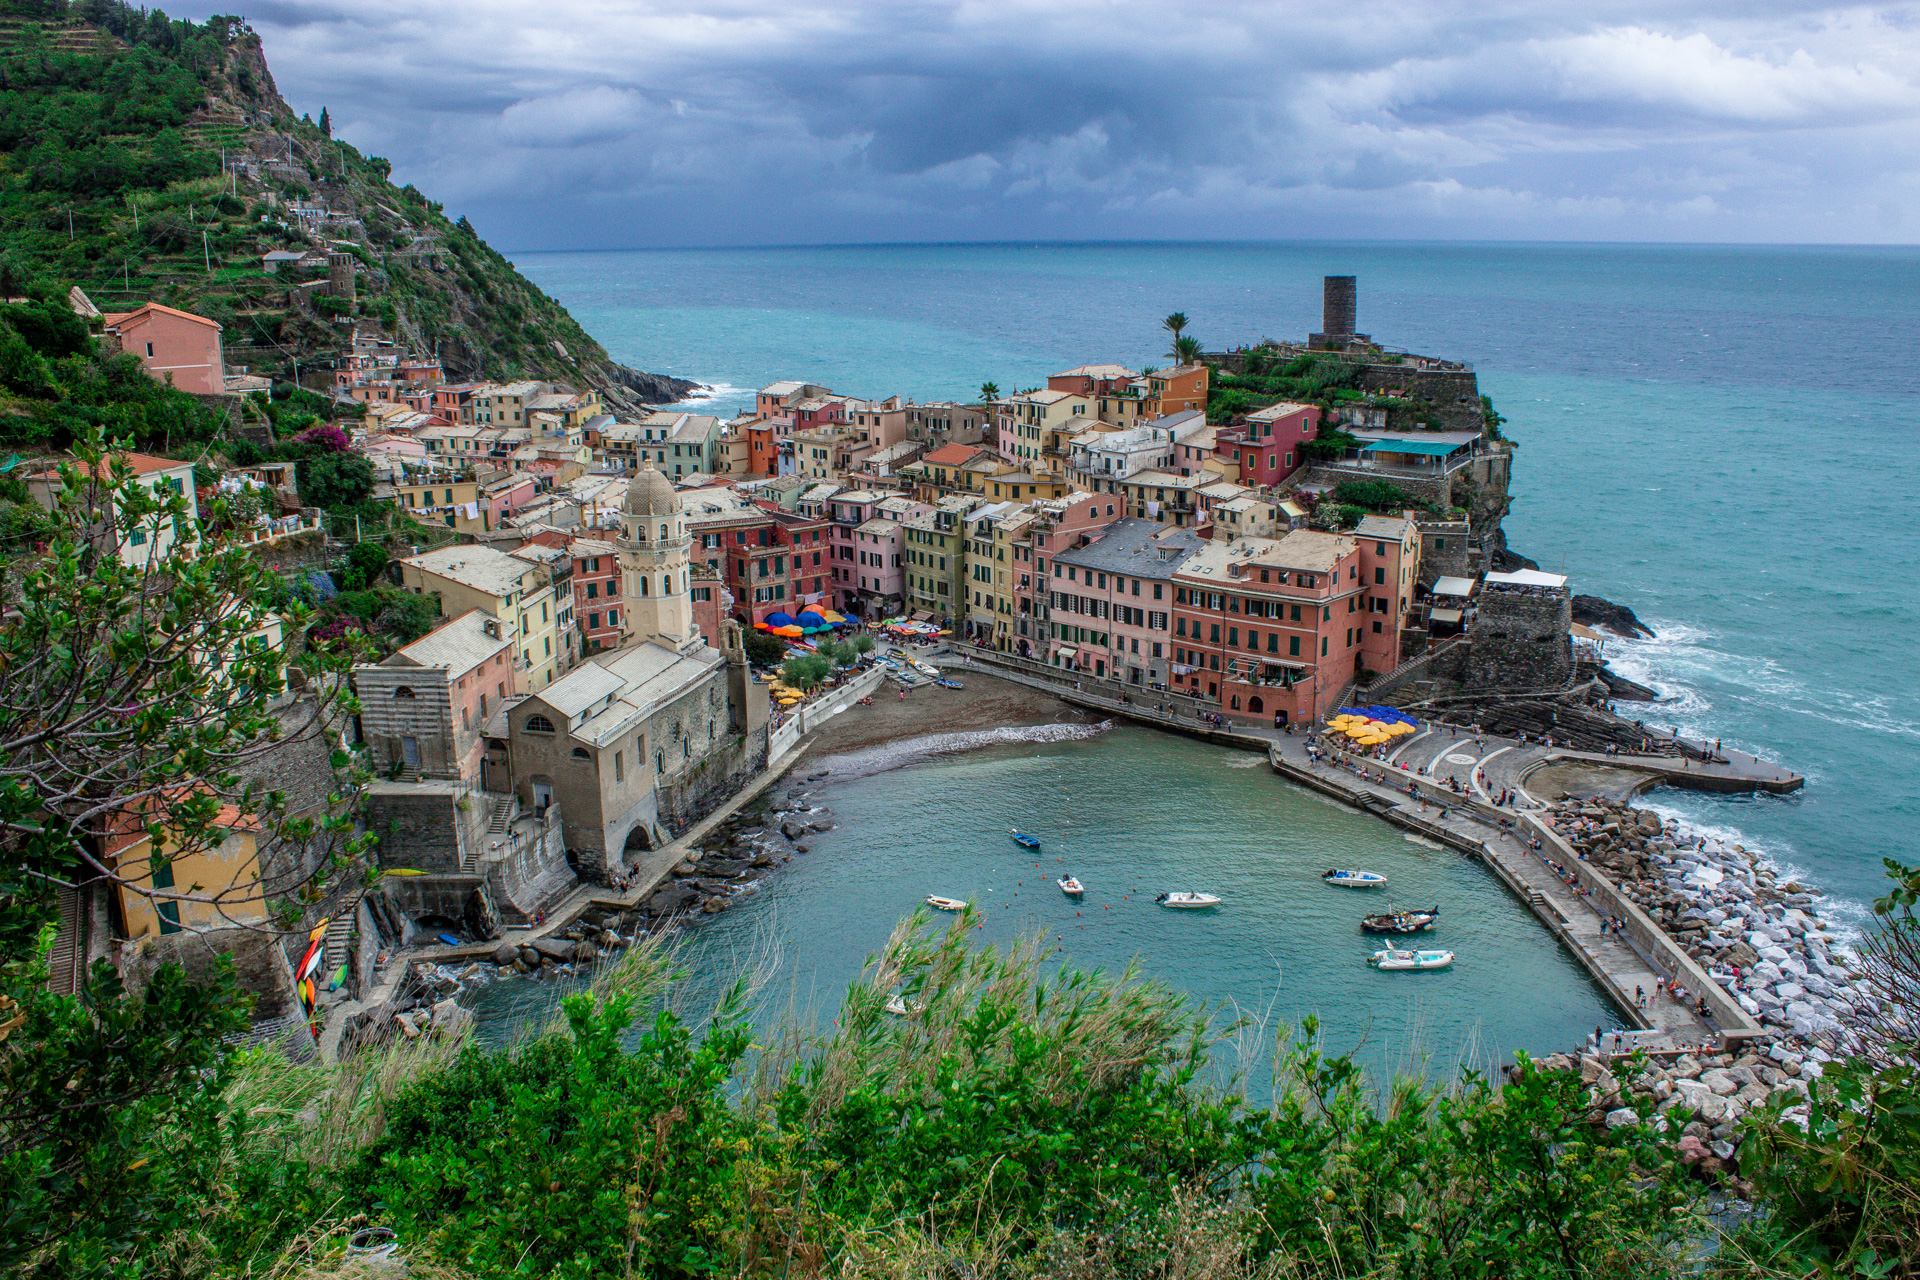 Vernazza - Cinque Terre.
Farbenfrohe Häuser ergeben ein buntes Mosaik, so wie sie in die Felsen gebaut sind.